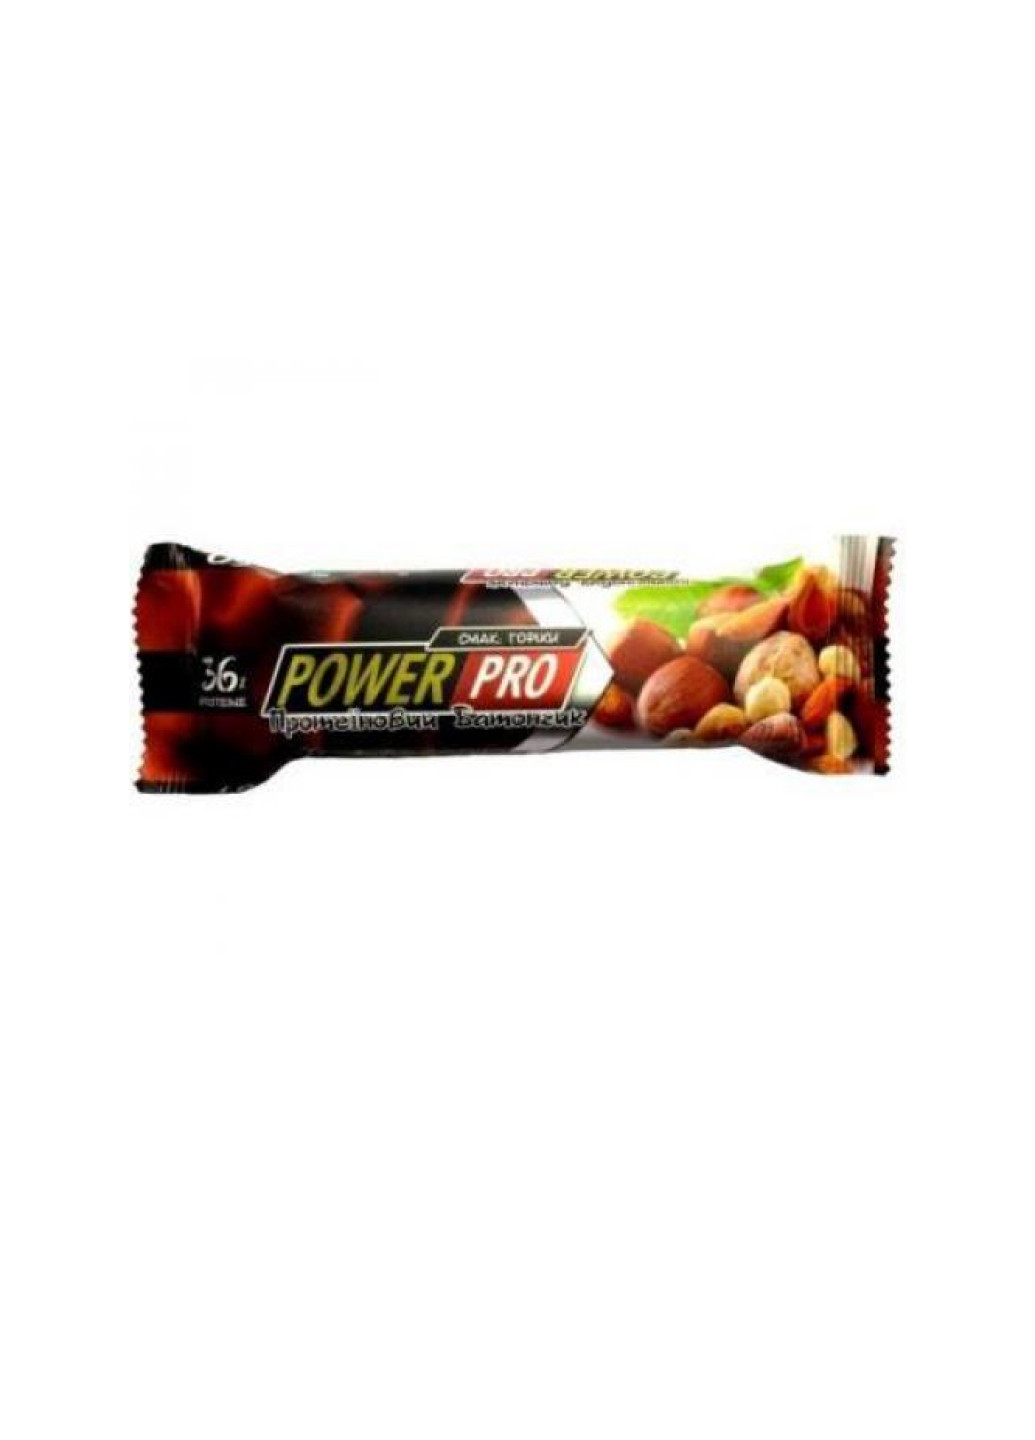 Диетическое питание для энергии Protein Bar Nutella 36% 20x60g Pistachio praline Power Pro (251857842)